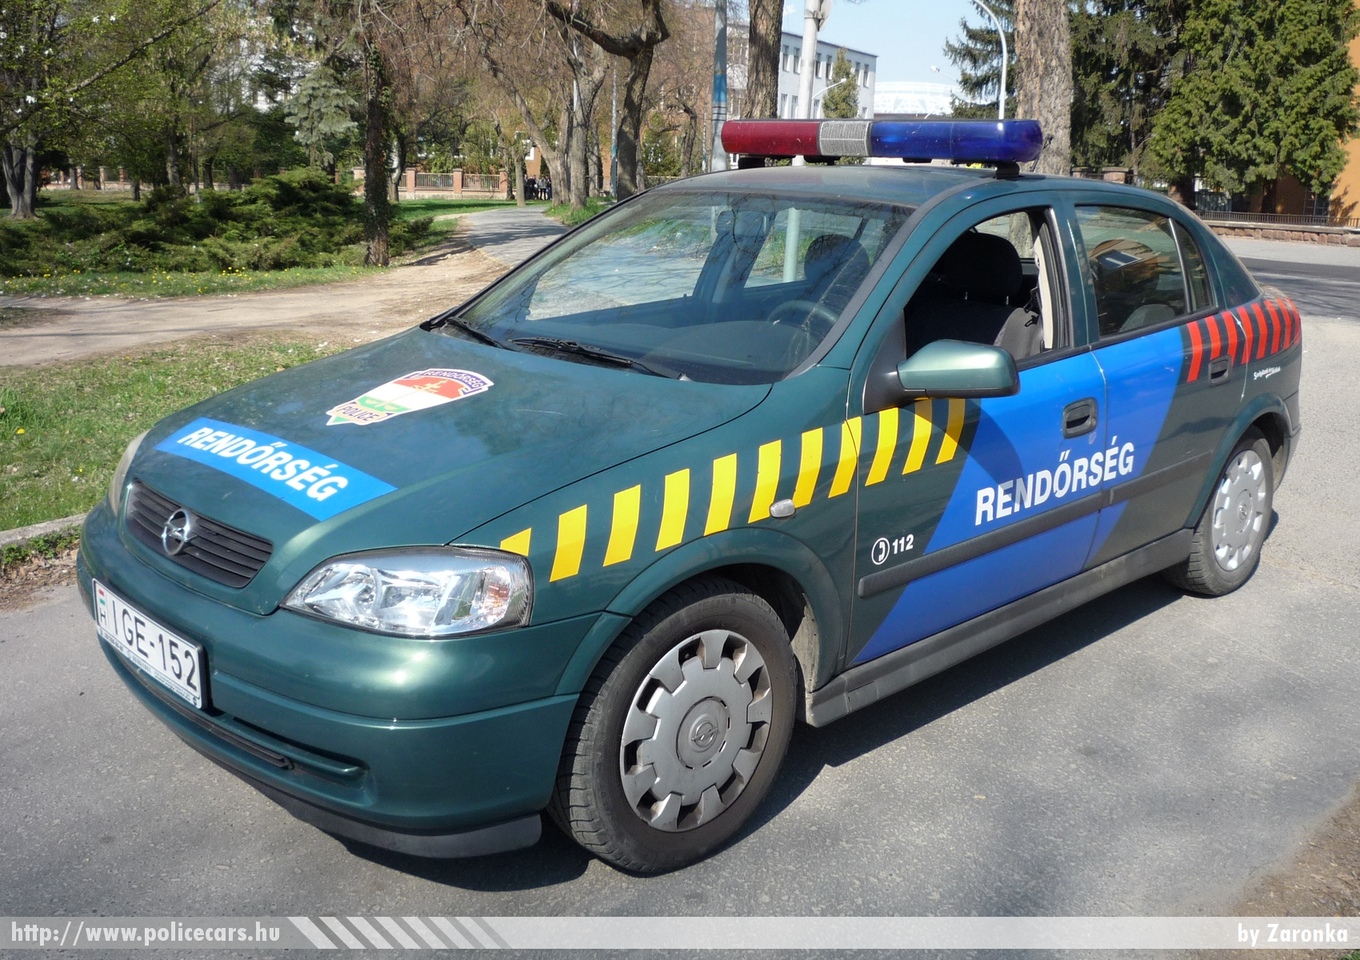 Opel Astra G, fotó: Zaronka
Keywords: magyar Magyarország rendőr rendőrautó rendőrség Hungary hungarian police policecar IGE-152